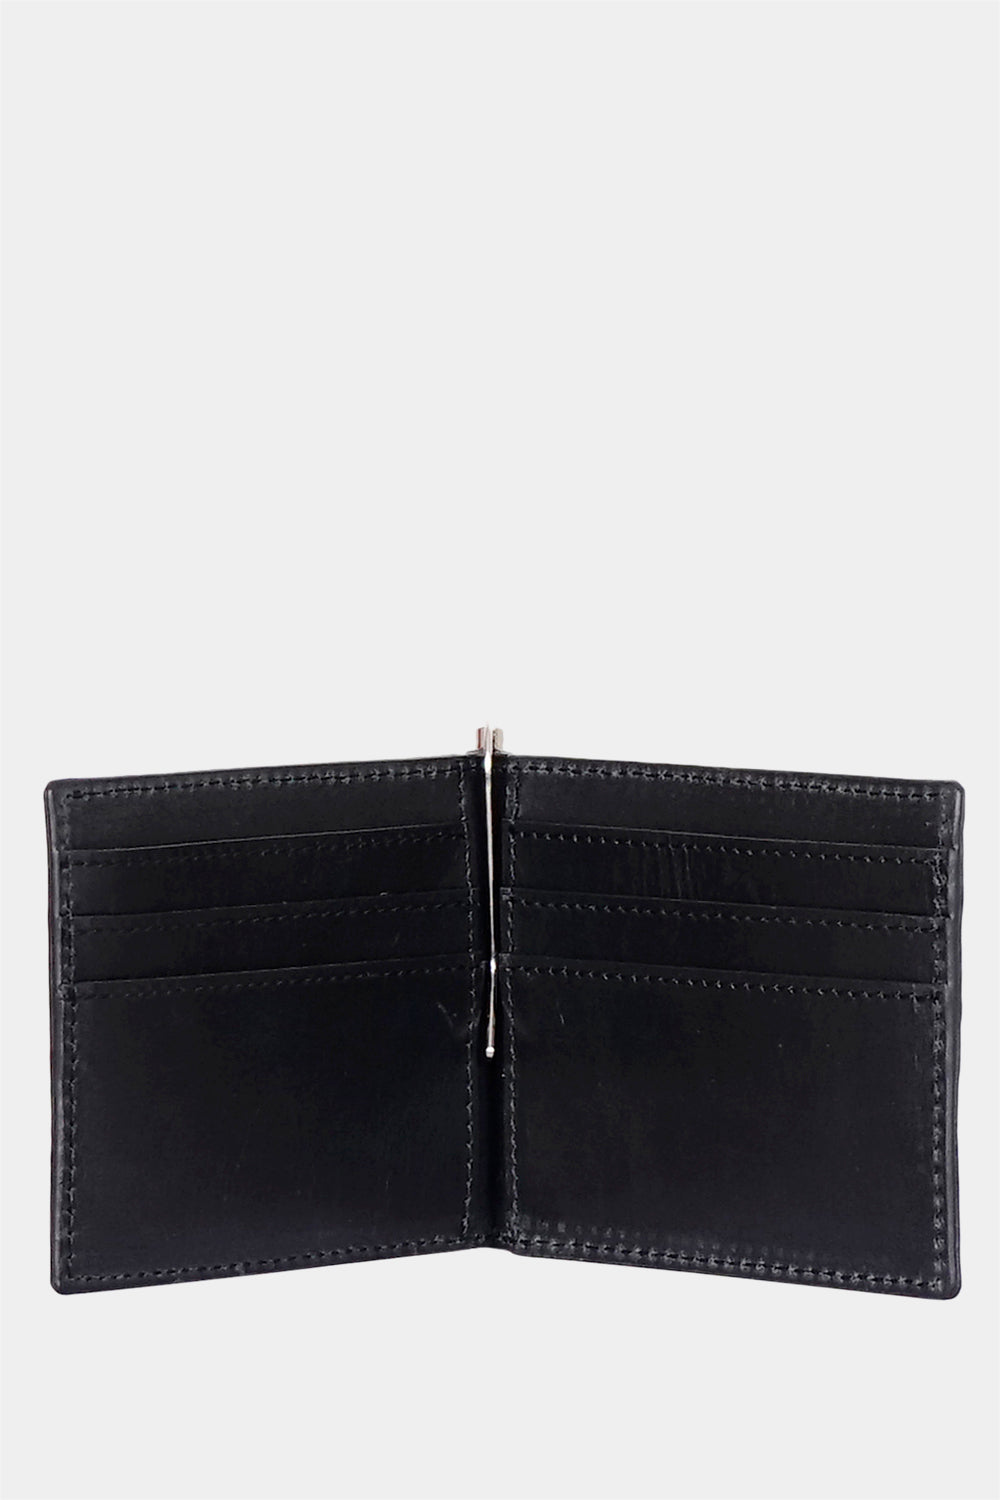 For Money bi-fold wallet in black